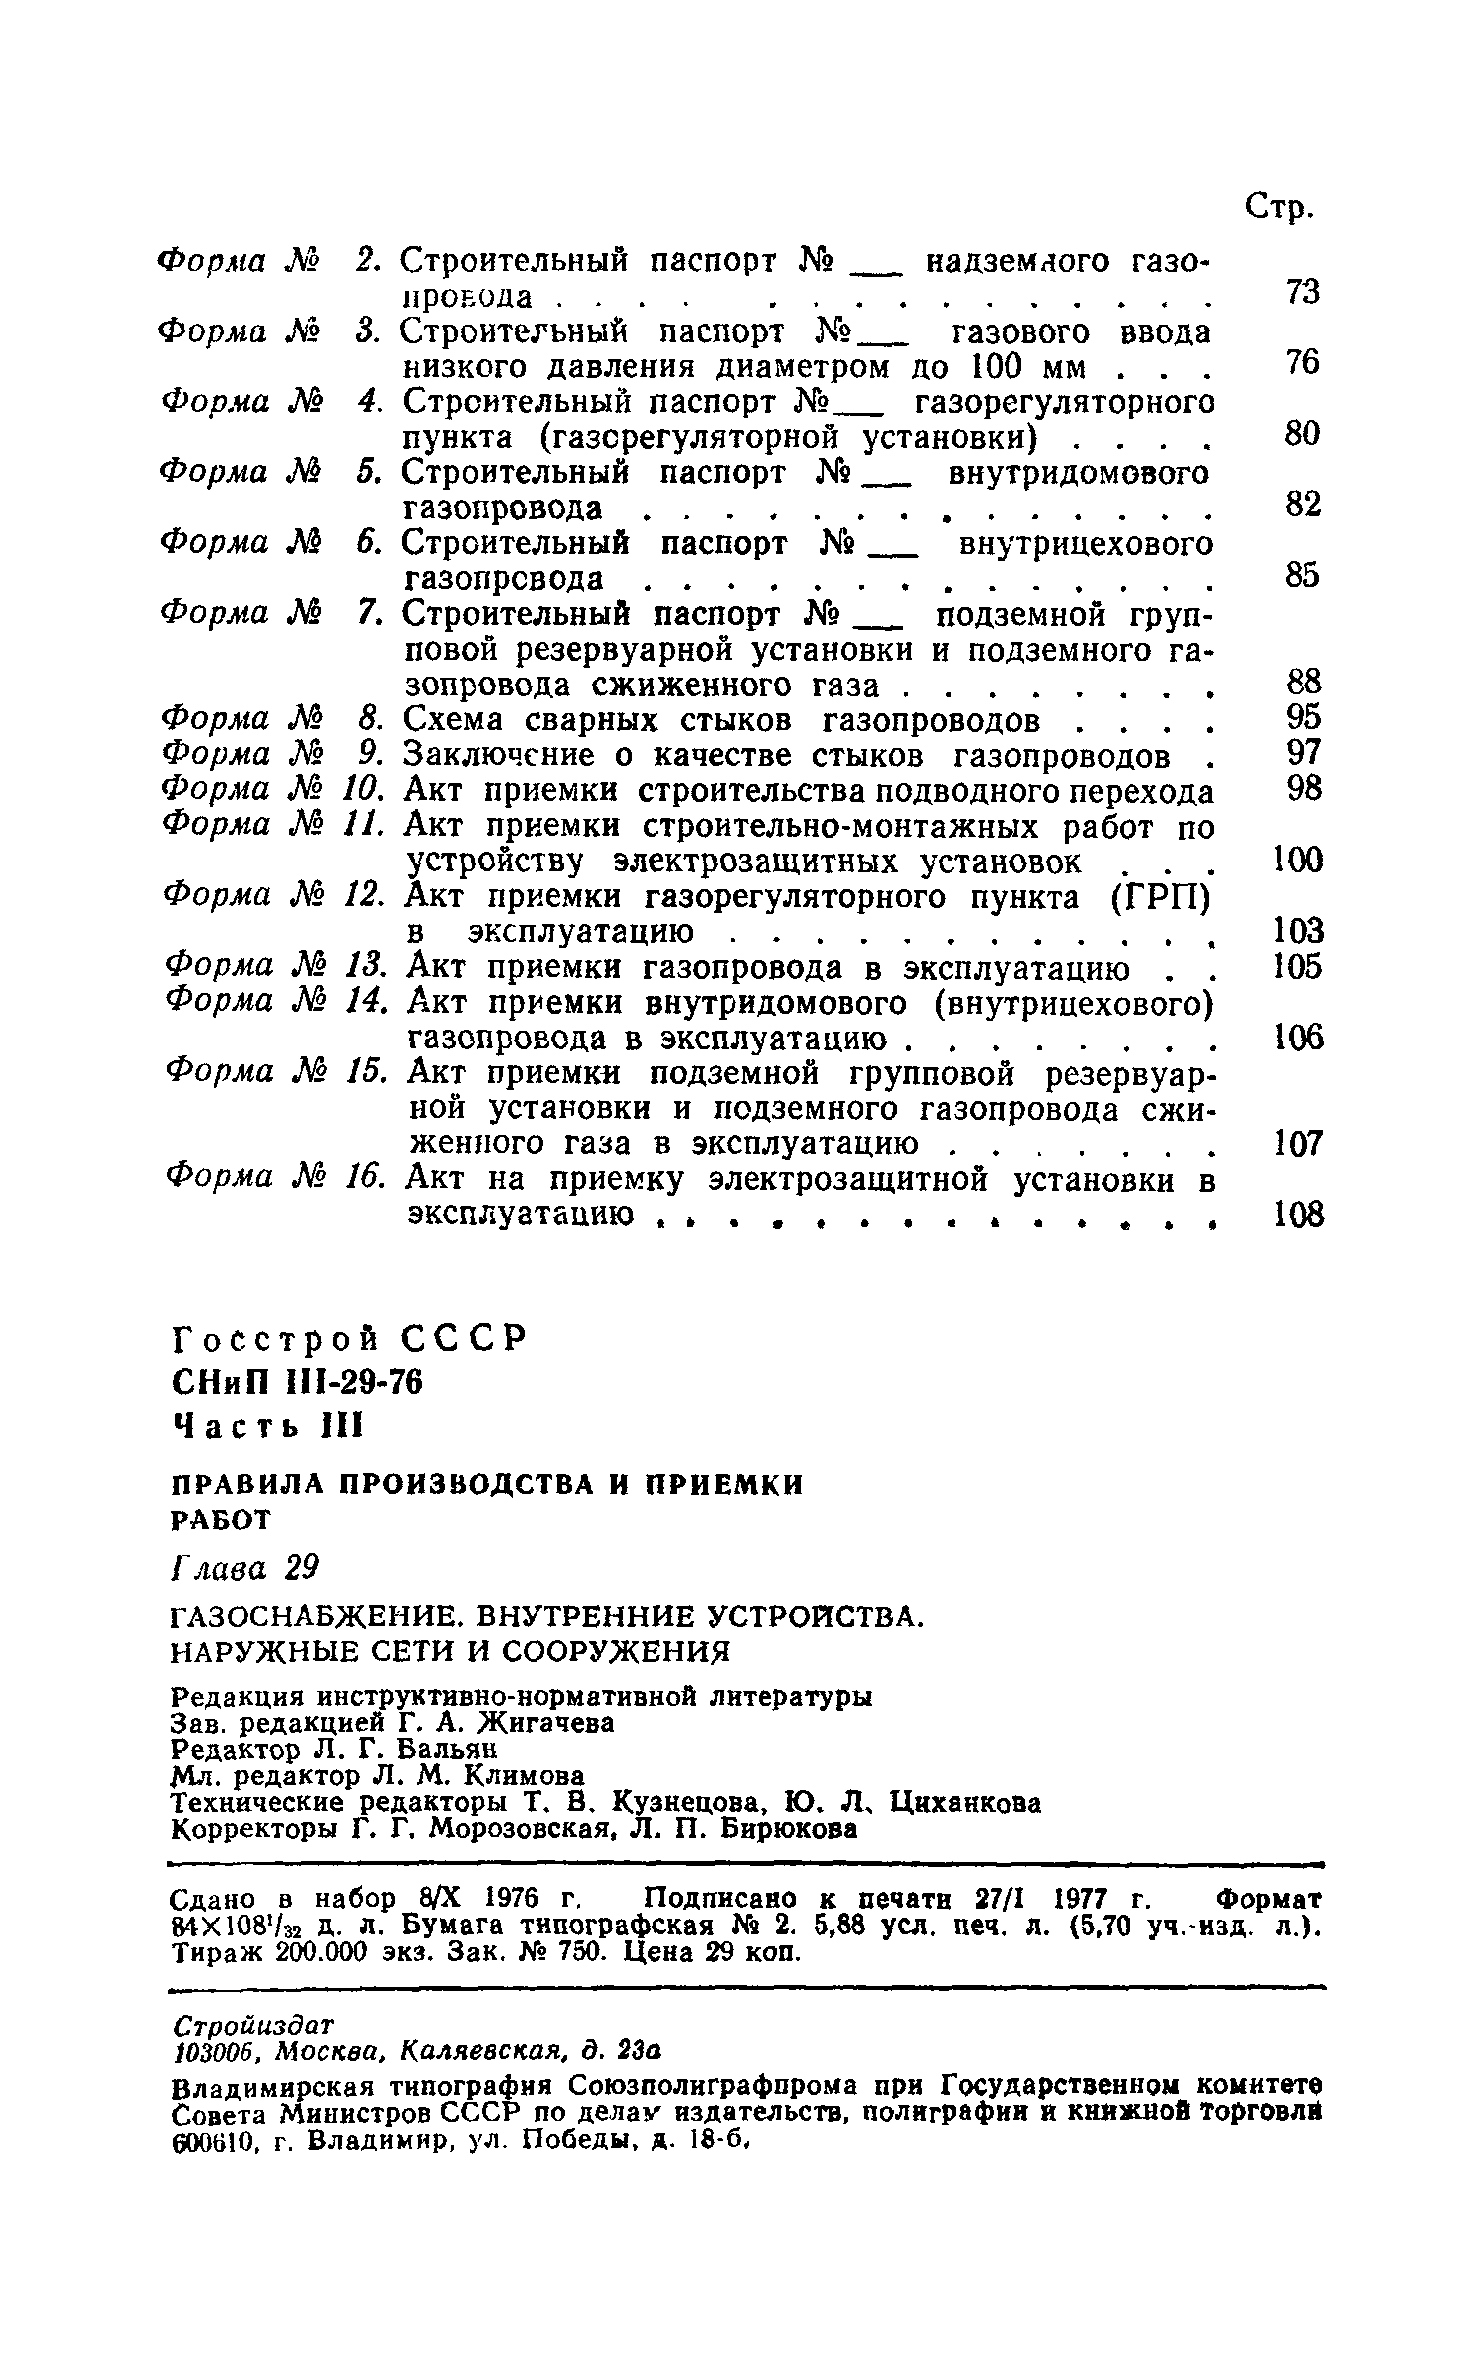 СНиП III-29-76